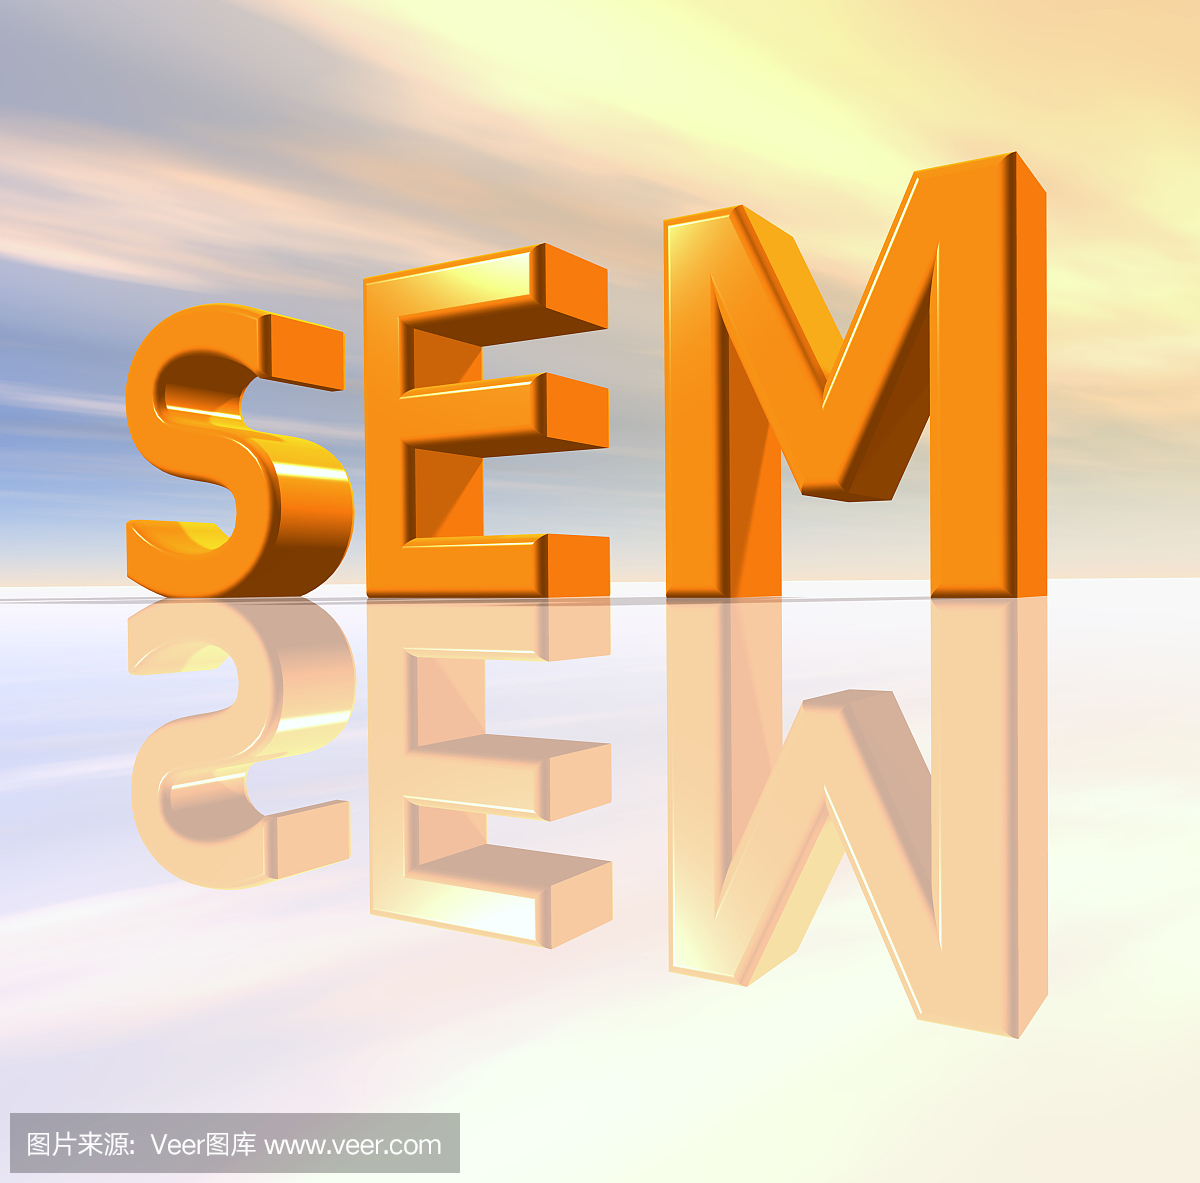 SEM - 搜索引擎营销